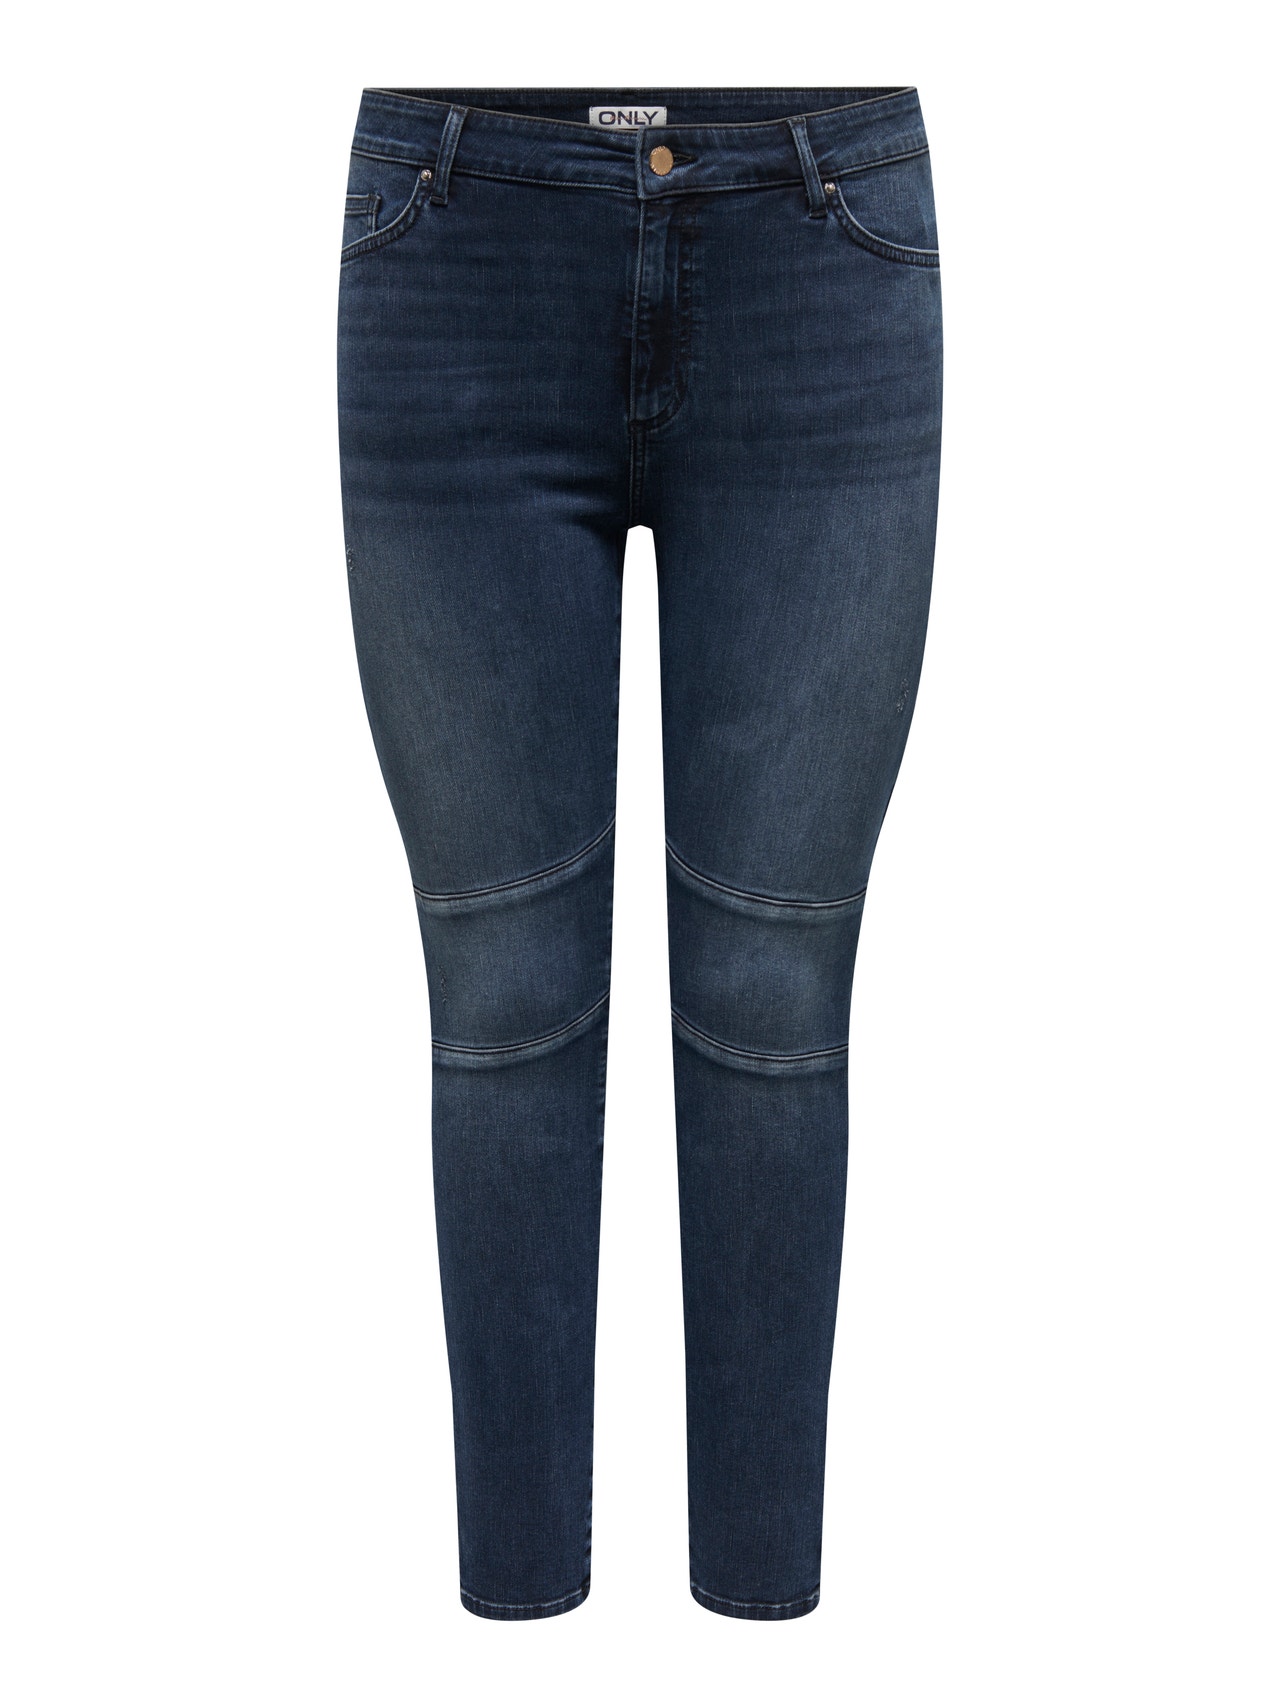 ONLY CARWilly Reg Ankle Skinny Fit Jeans -Blue Black Denim - 15266401